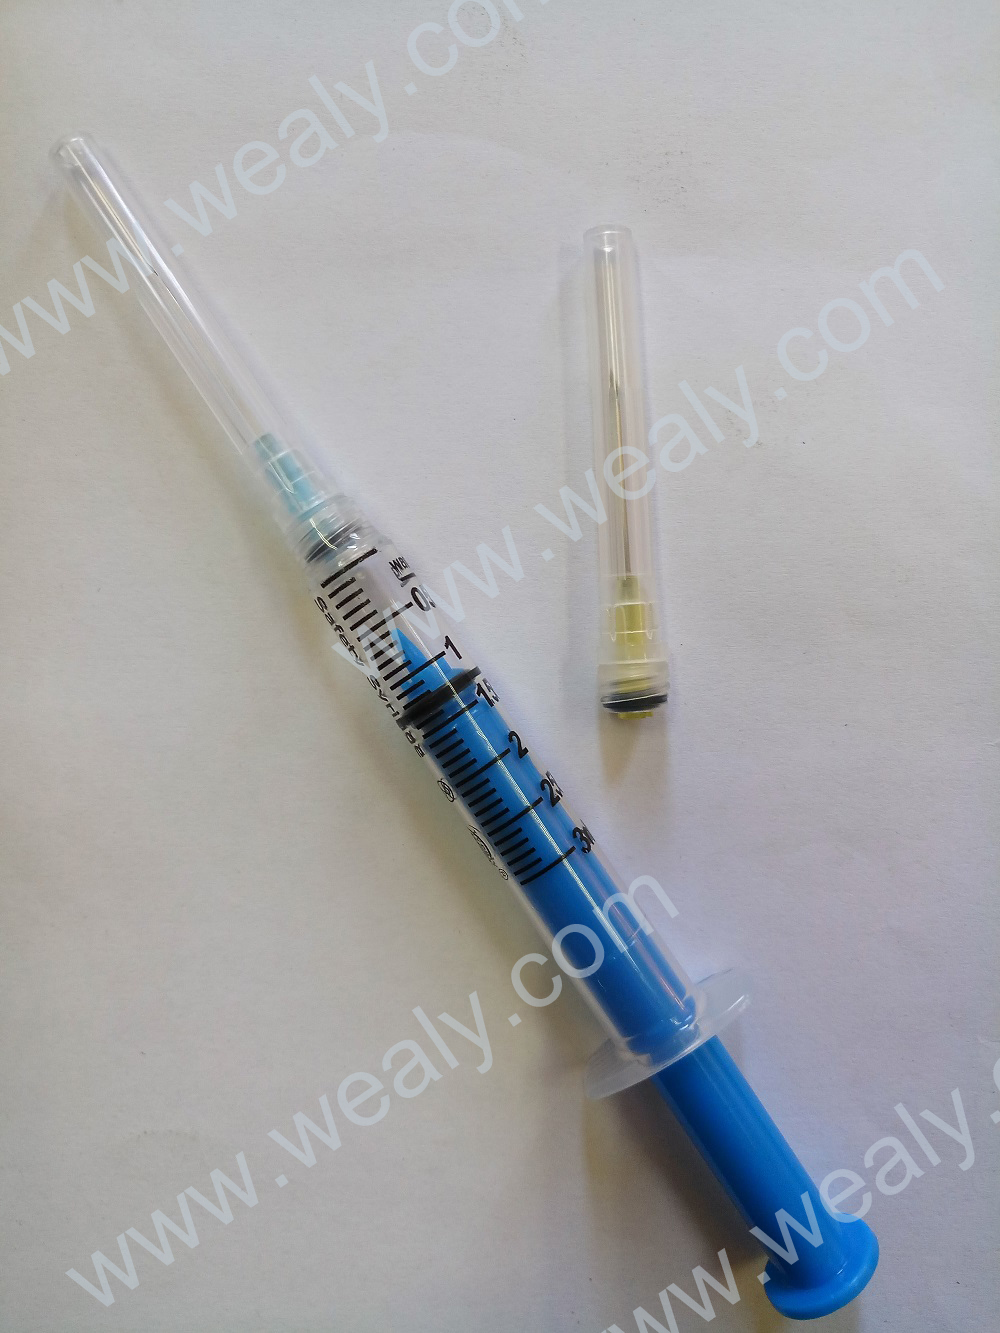 Safety Syringe With Detachable Needle